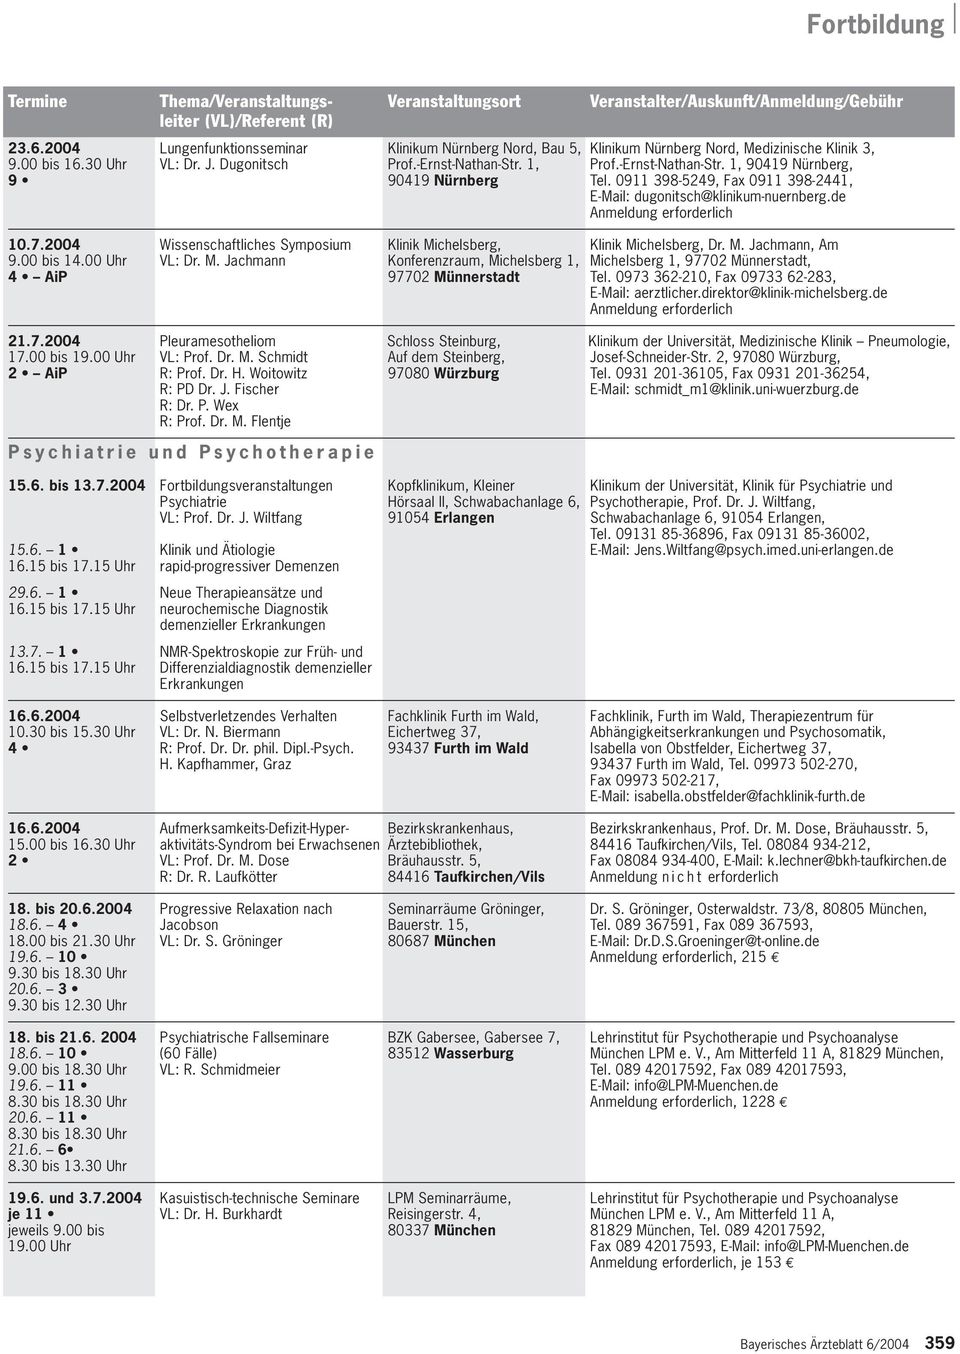 2004 Wissenschaftliches Symposium Klinik Michelsberg, Klinik Michelsberg, Dr. M. Jachmann, Am 9.00 bis 14.00 Uhr VL: Dr. M. Jachmann Konferenzraum, Michelsberg 1, Michelsberg 1, 97702 Münnerstadt, 4 AiP 97702 Münnerstadt Tel.